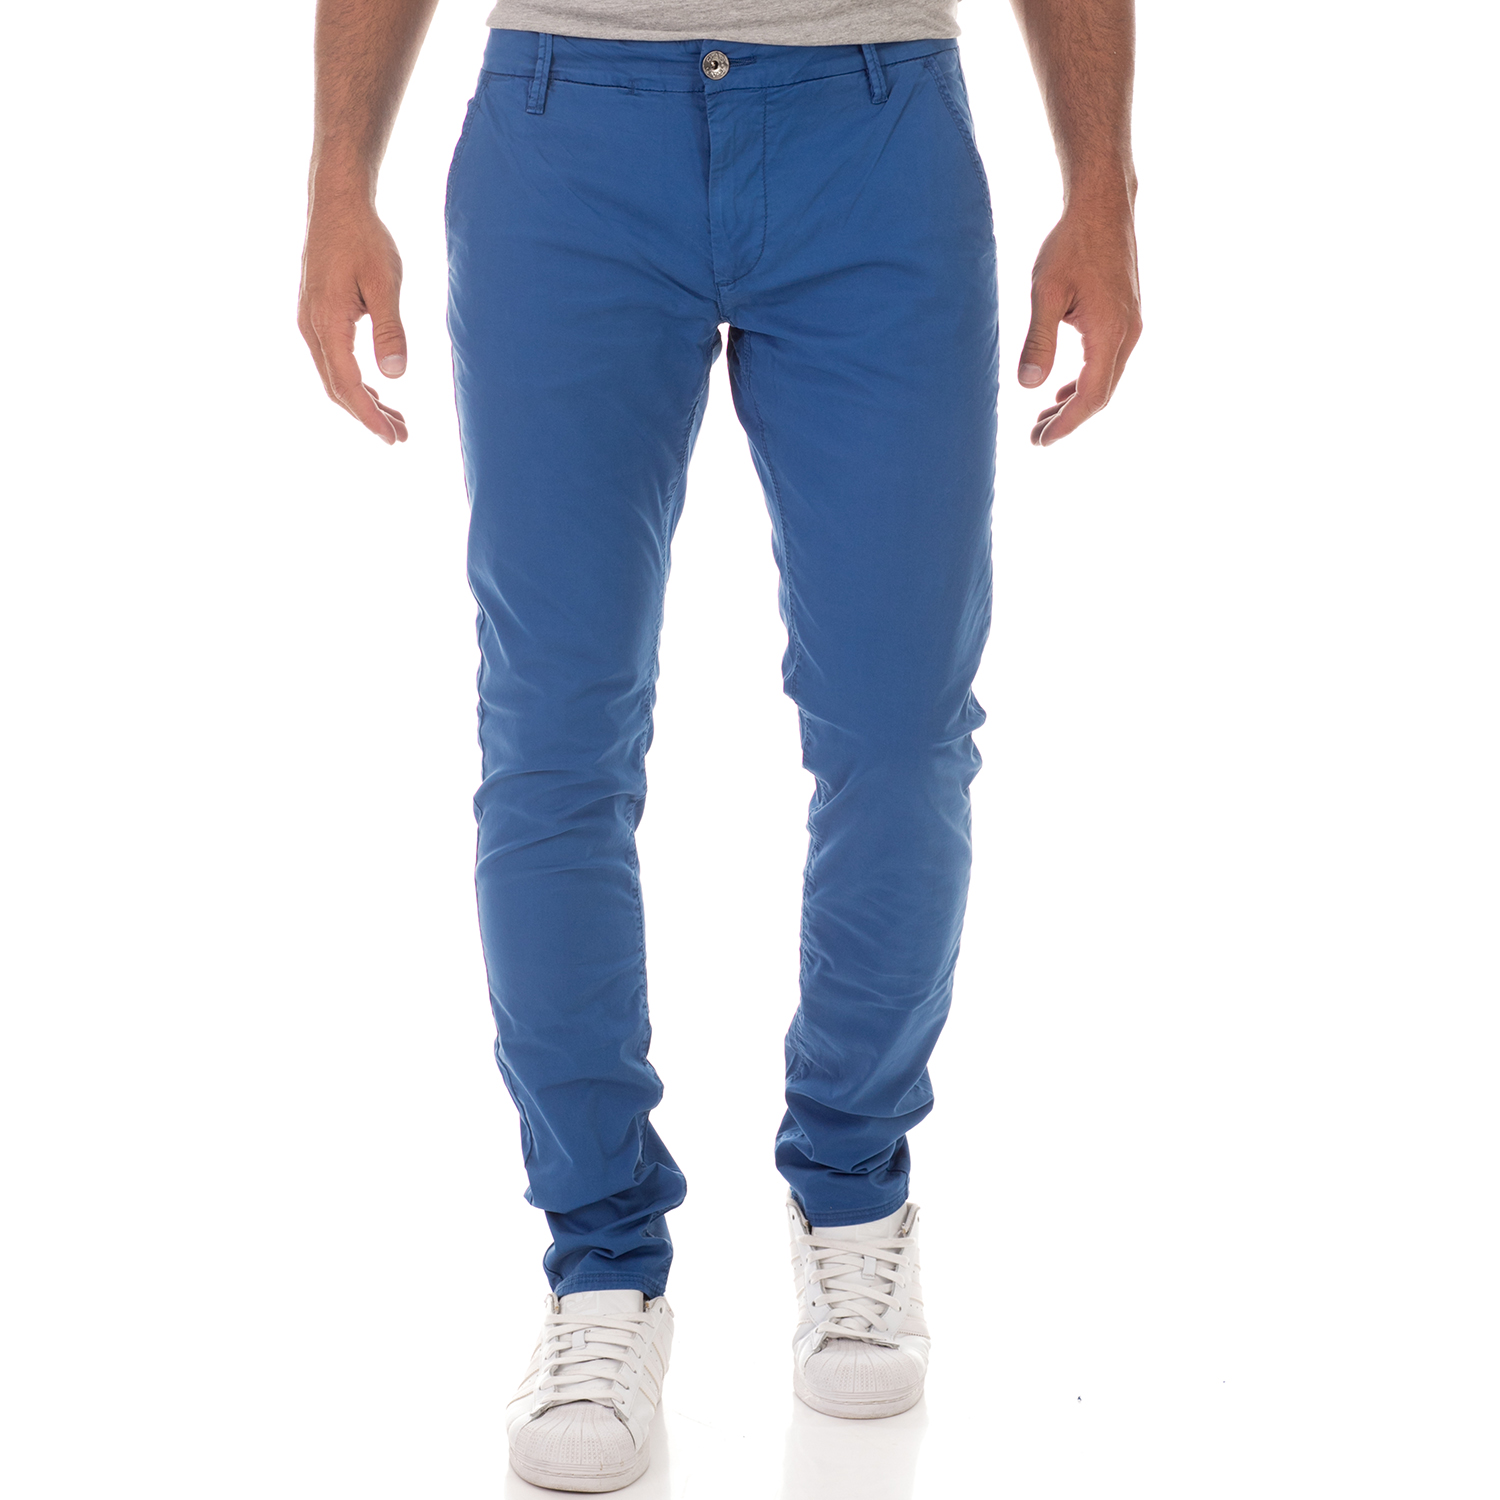 Ανδρικά/Ρούχα/Παντελόνια/Chinos GAS - Ανδρικό παντελόνι chino GAS ALONI NOAL μπλε